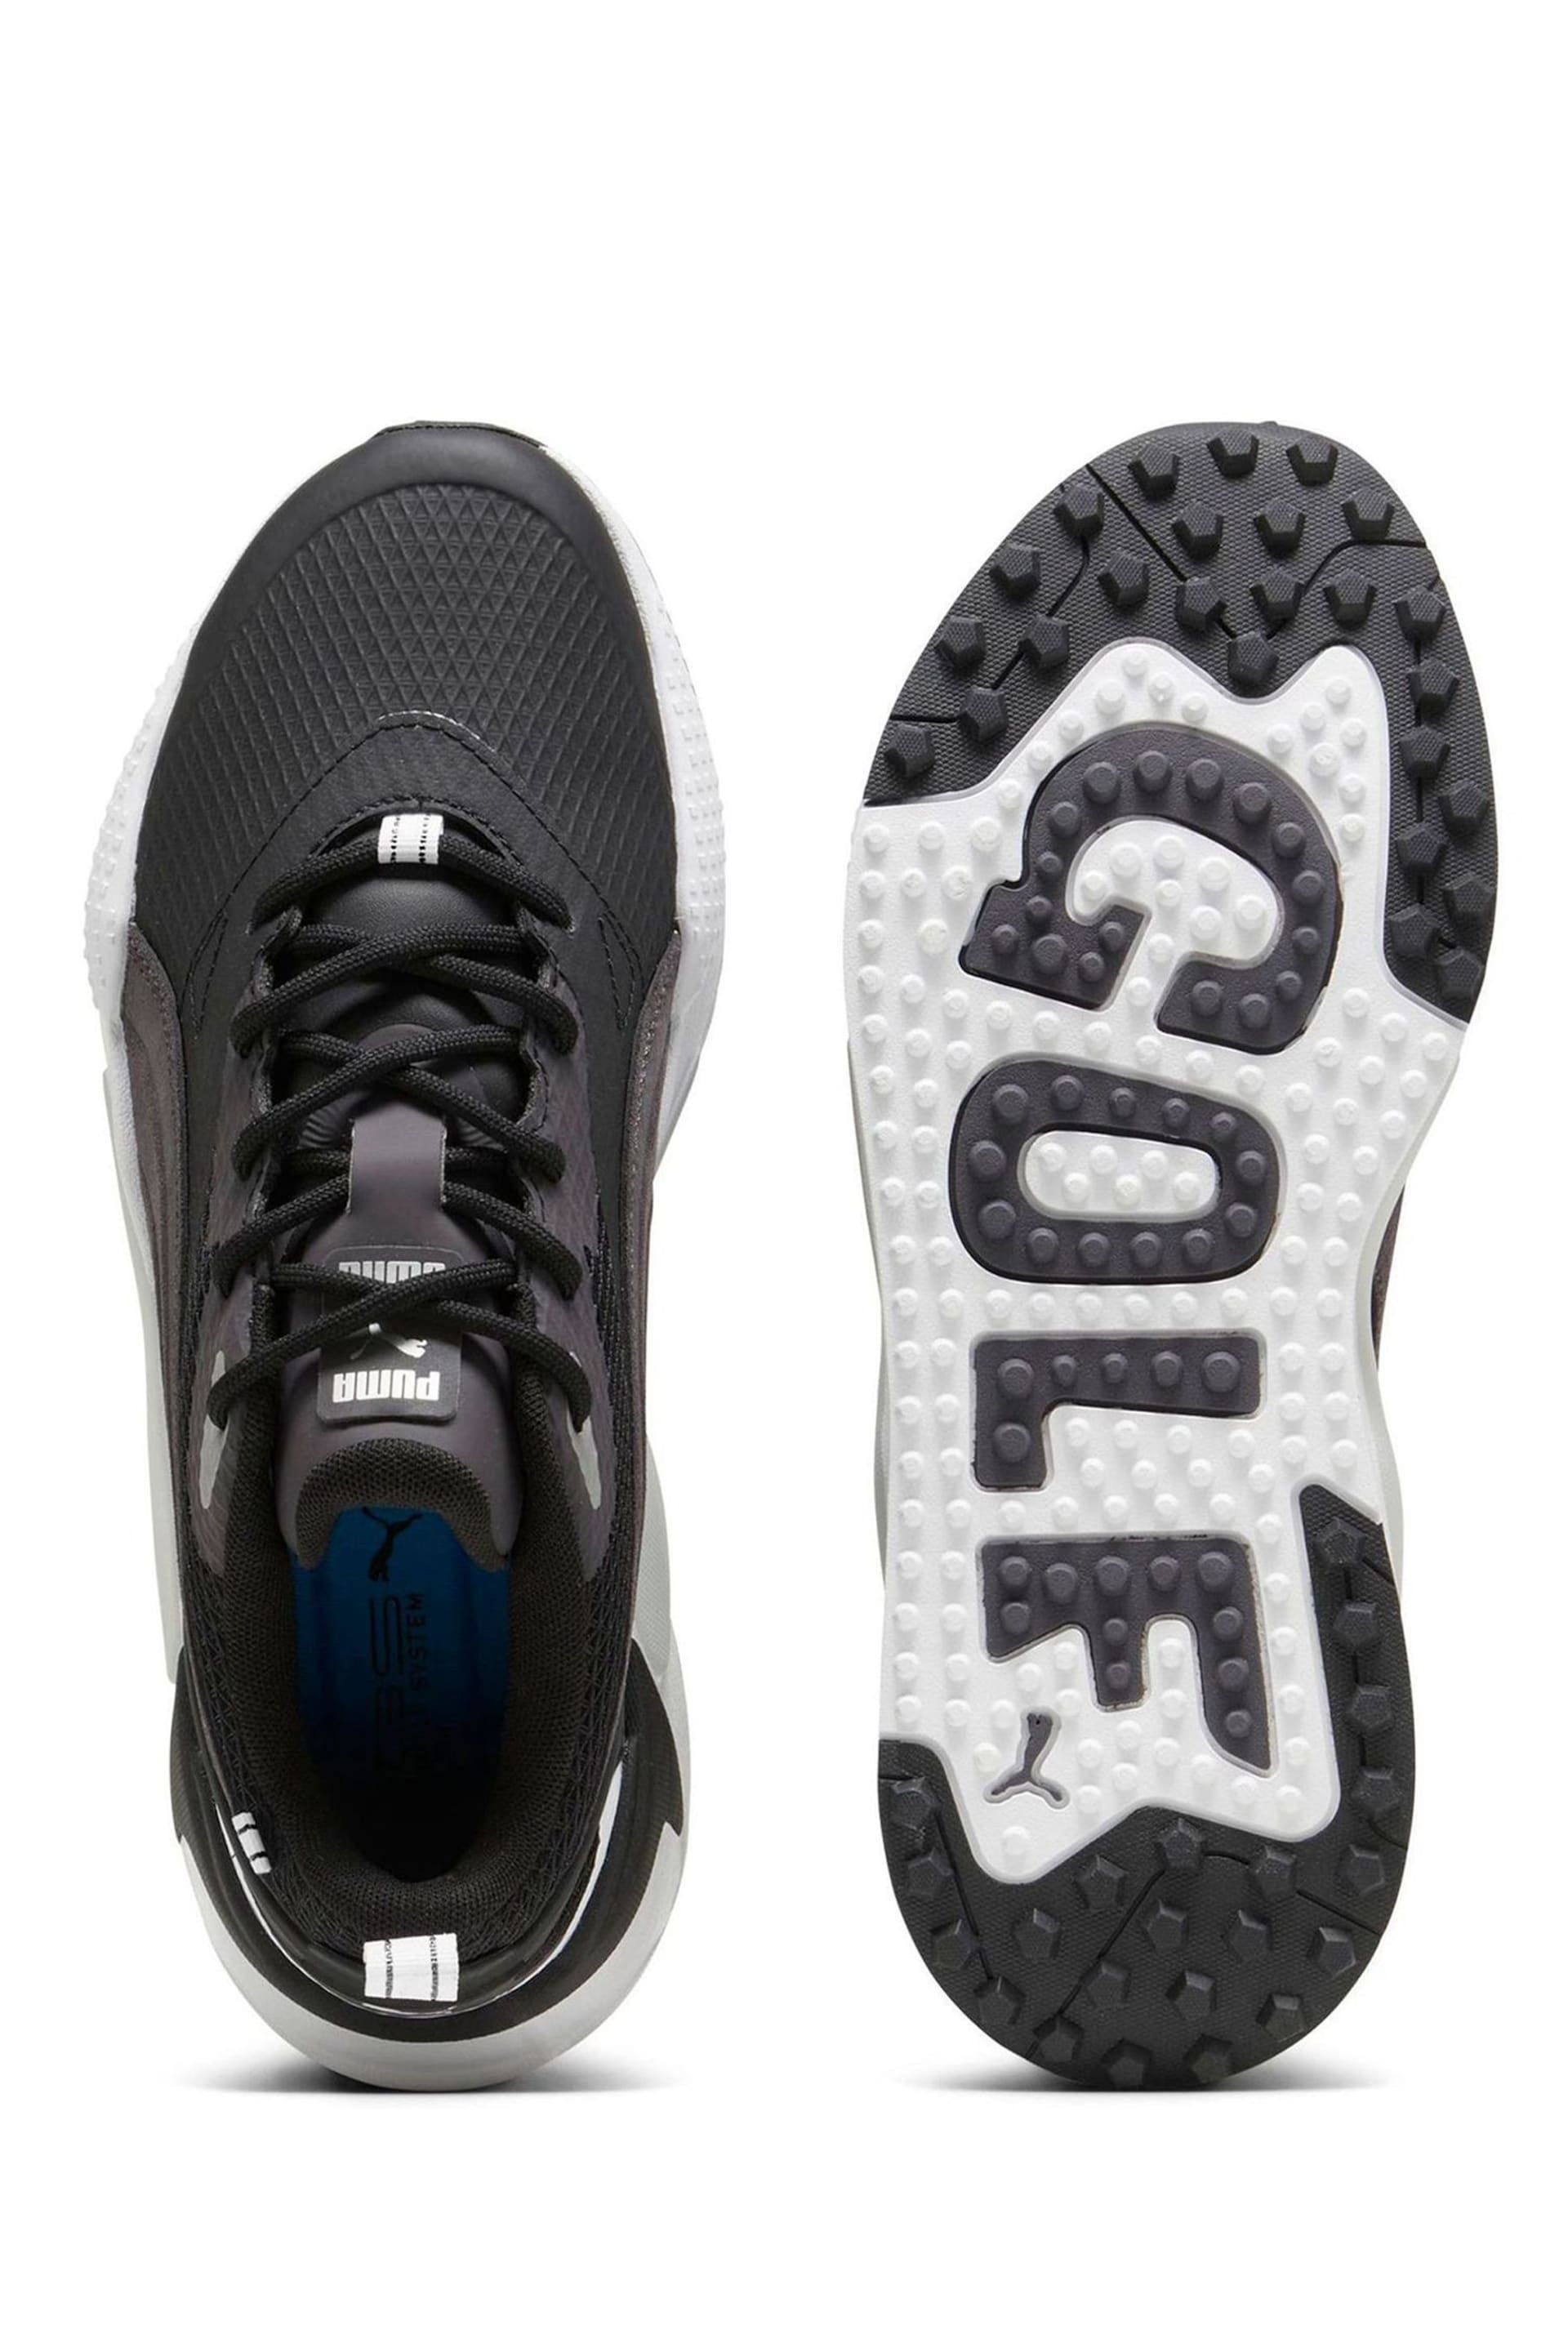 Puma Black Mens GS-X Efekt Golf Shoes - Image 2 of 4